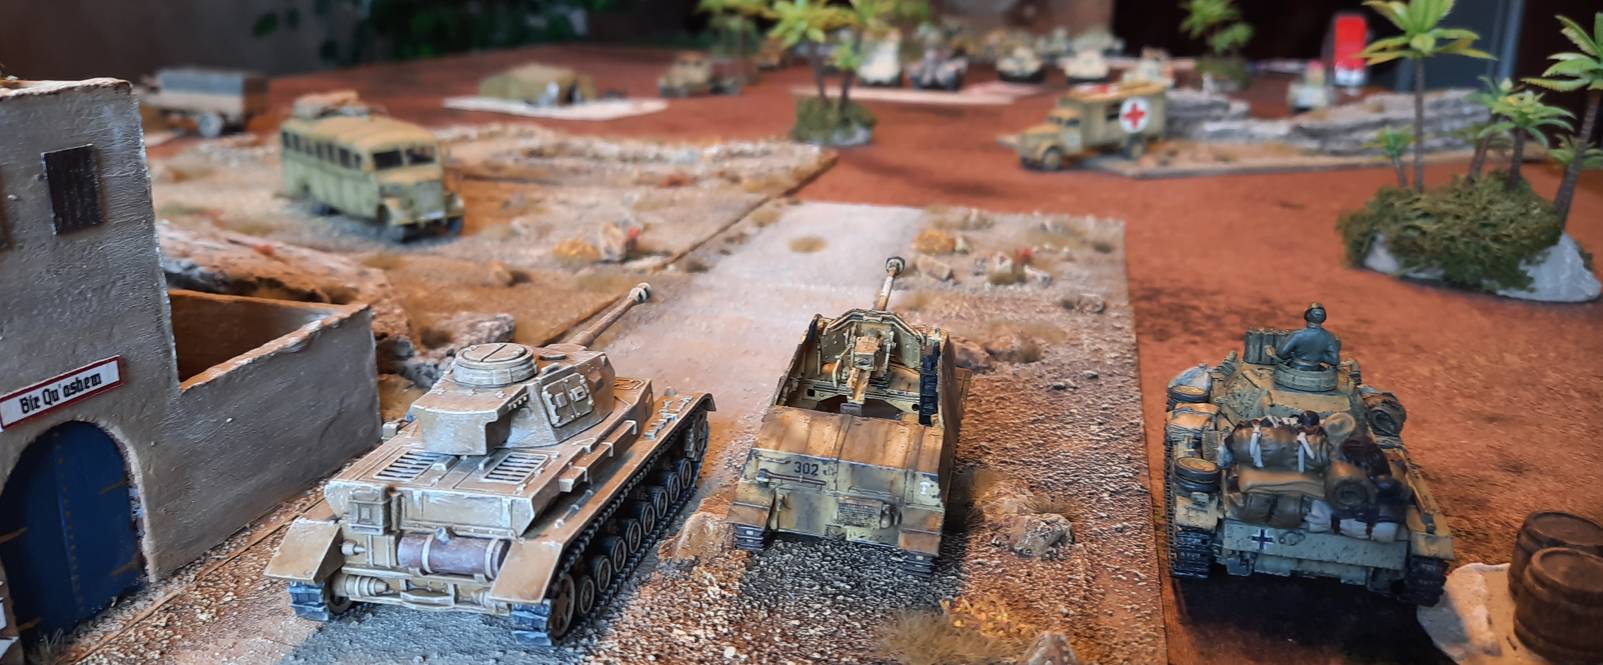 Die erreichten Positionen nach dem ersten Zug aus Sicht des Afrika Korps. Man erkennt die Nebelwand vor den Briten. Diese verhindert den direkten Beschuss der beiden britischen Panzer aus großer Entfernung durch den Panzer IV und den Marder.